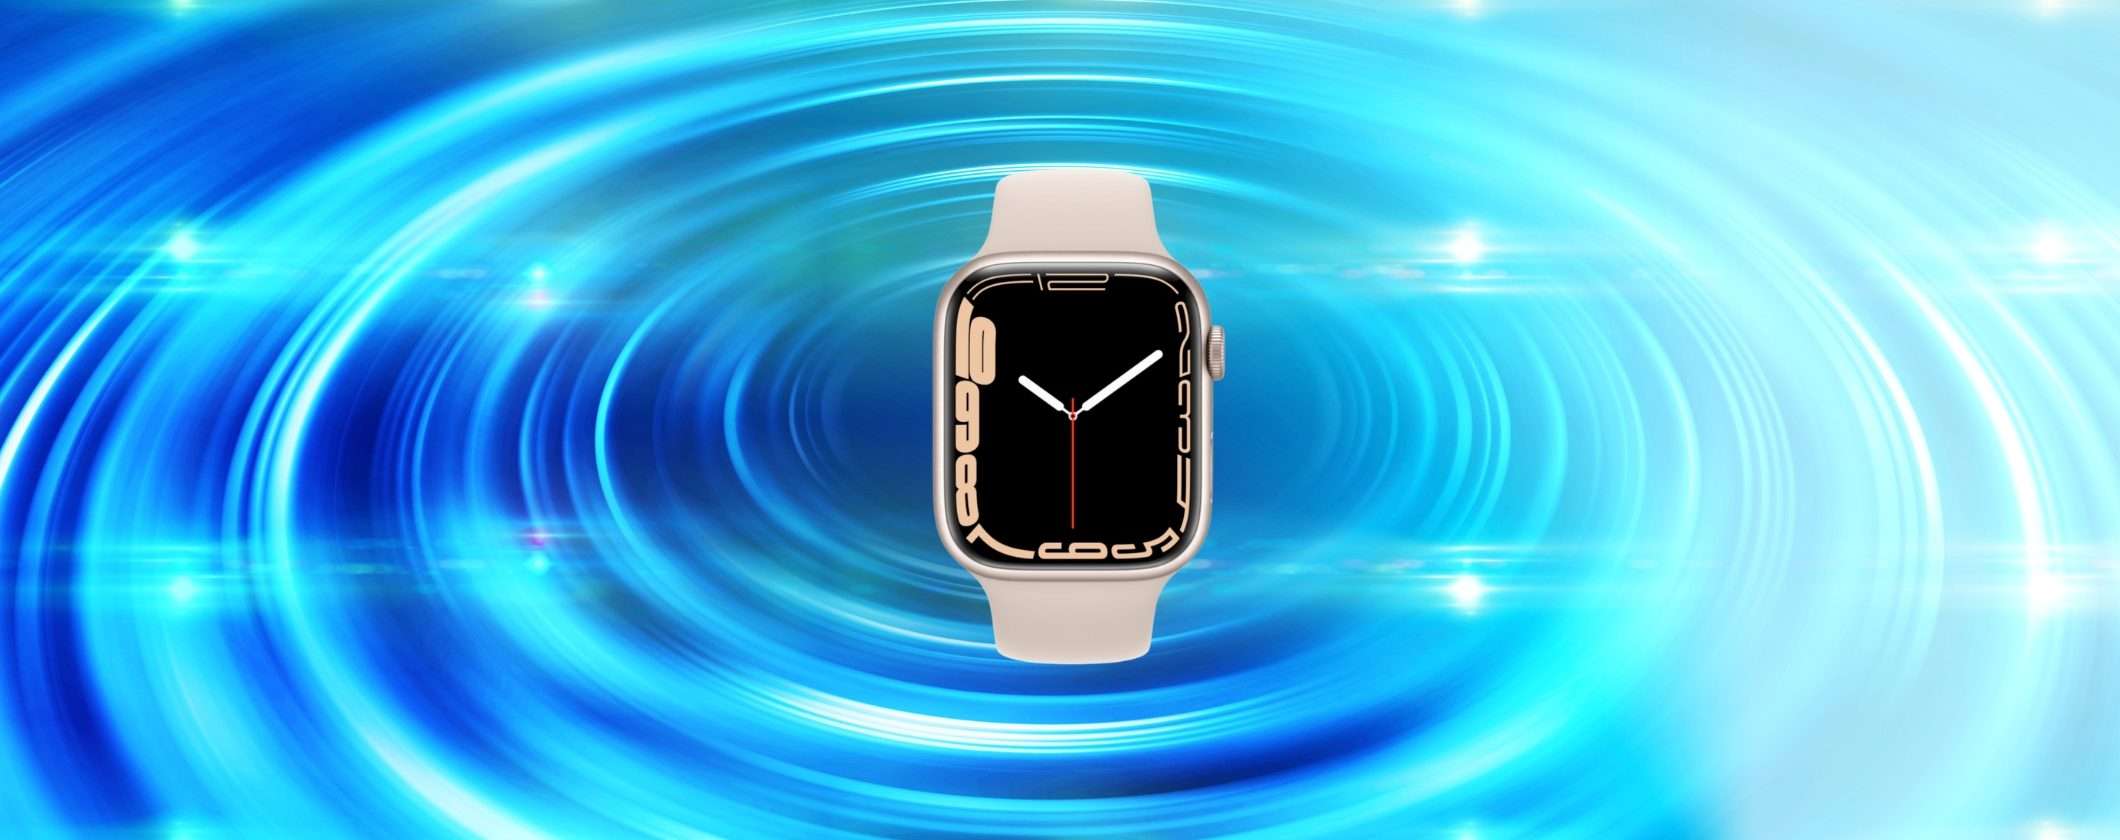 Apple Watch Series 7 ricondizionato: ULTIMI PEZZI su eBay